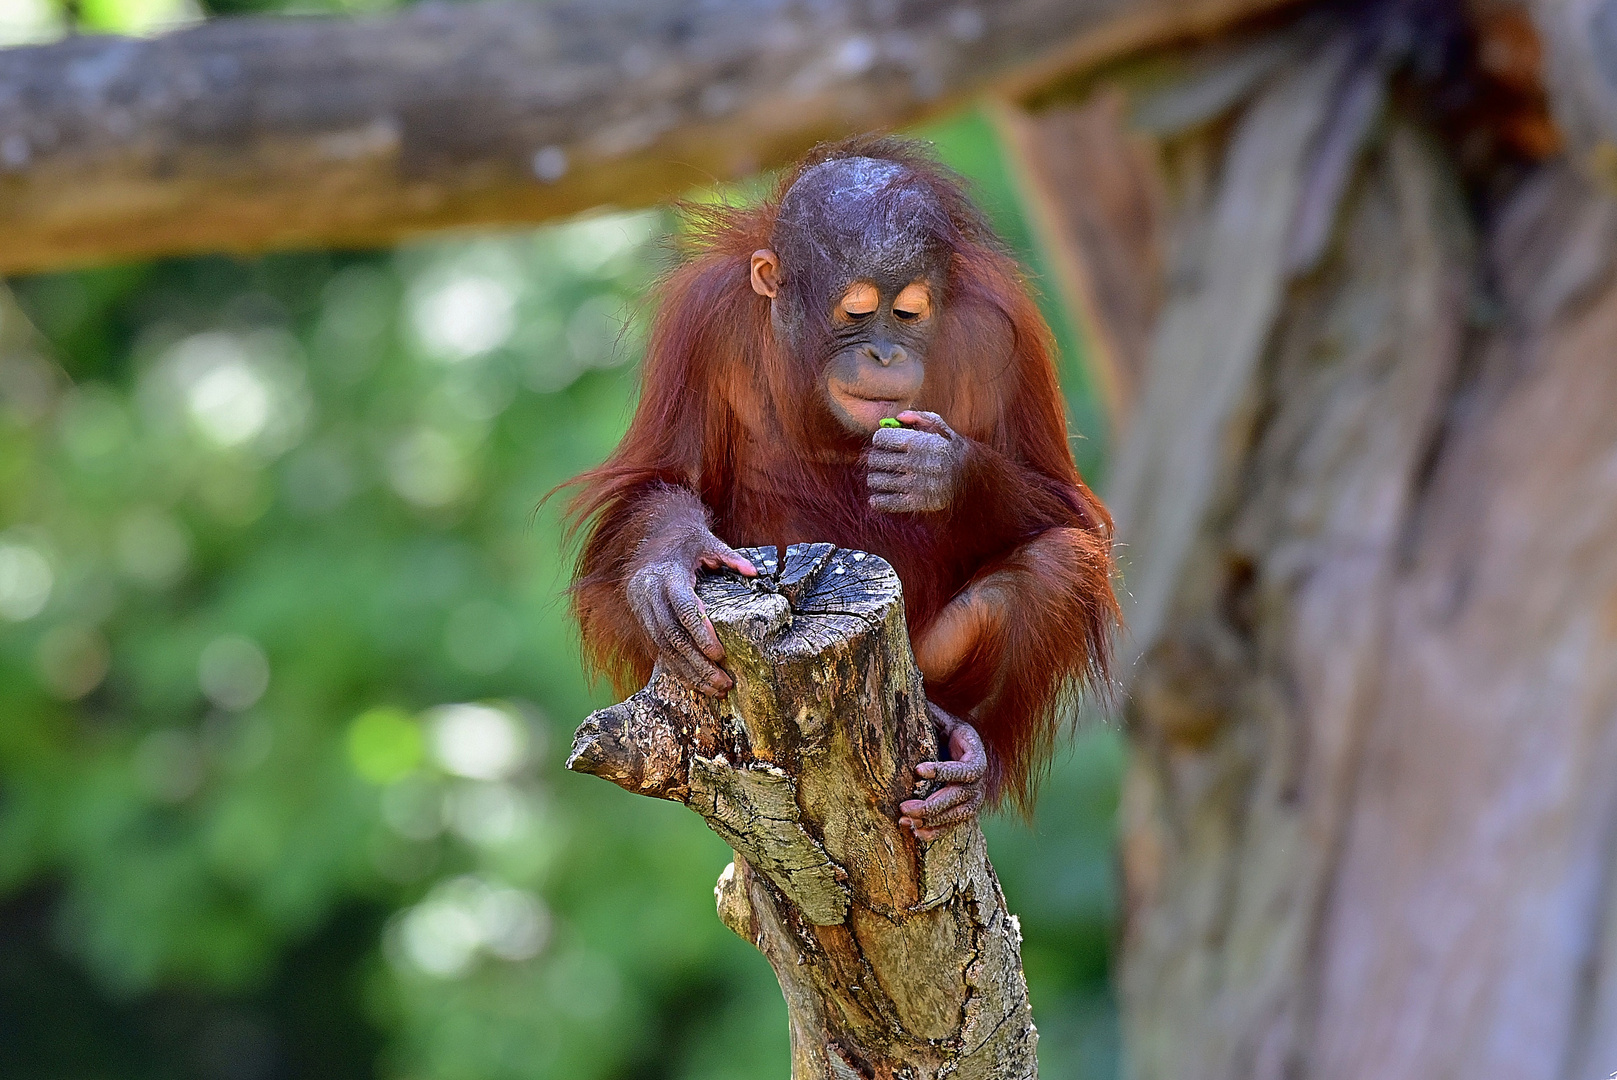 Borneo-Orang-Utan (Pongo pygmaeus)